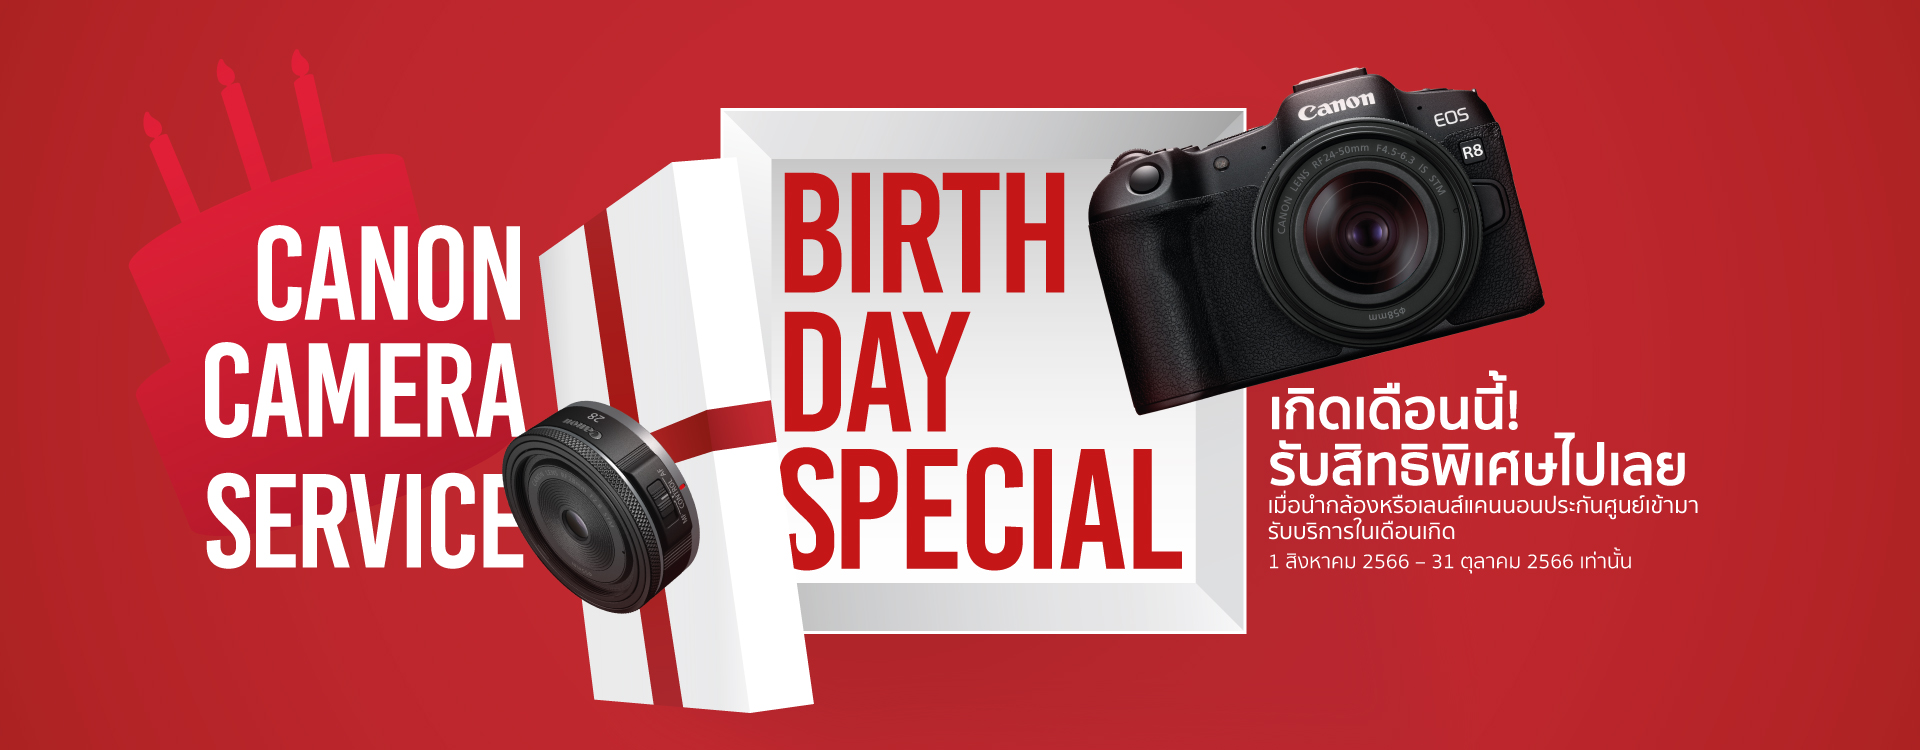 แคนนอน จัดแคมเปญดีต่อใจ Canon Camera Service Birthday Special มอบส่วนลดค่าบริการและซ่อมด่วนฟรีในเดือนเกิดของลูกค้า